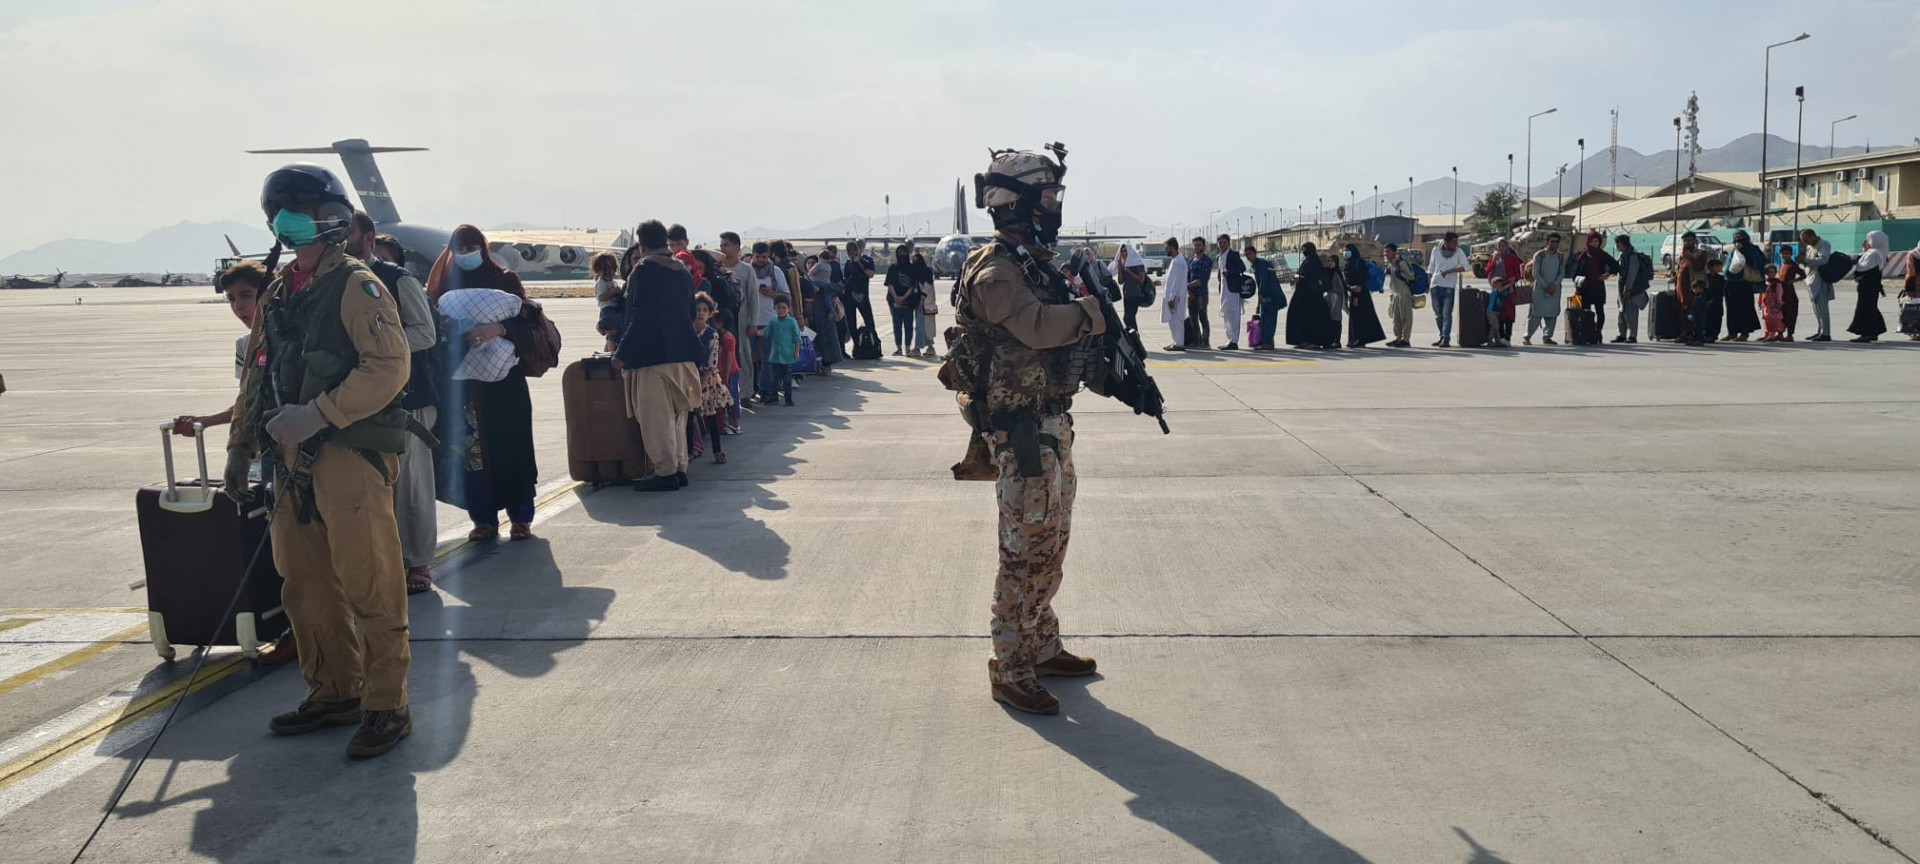 Brasileiro é resgatado do Afeganistão com ajuda de Espanha e Alemanha